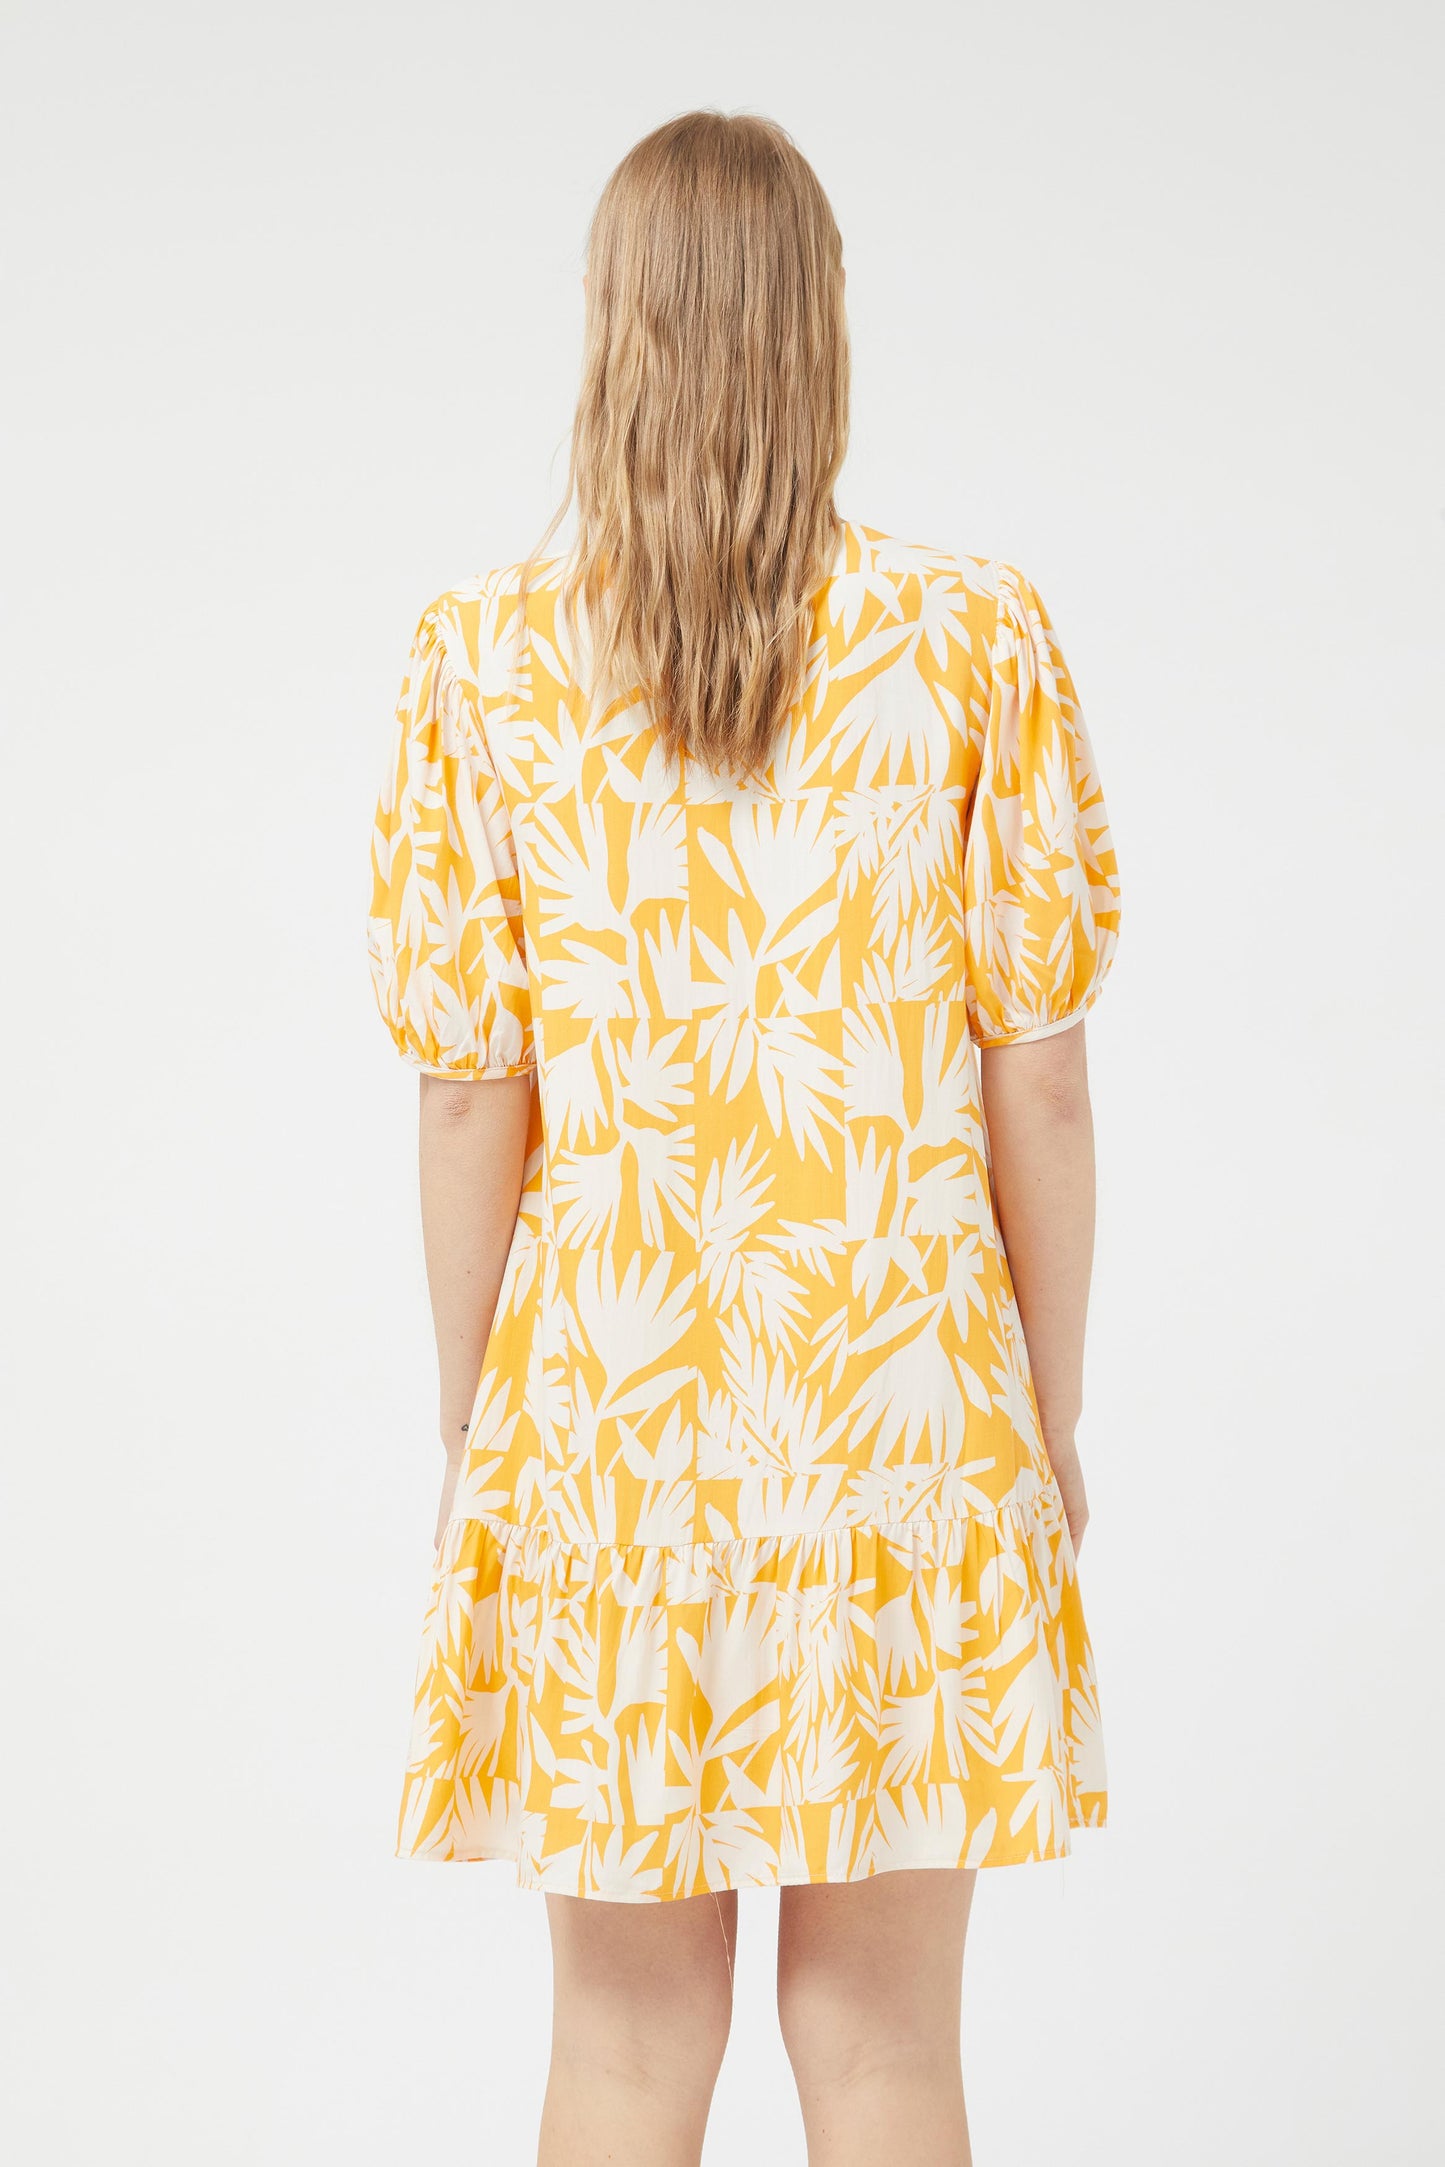 Palm Spring Floral Short Dress